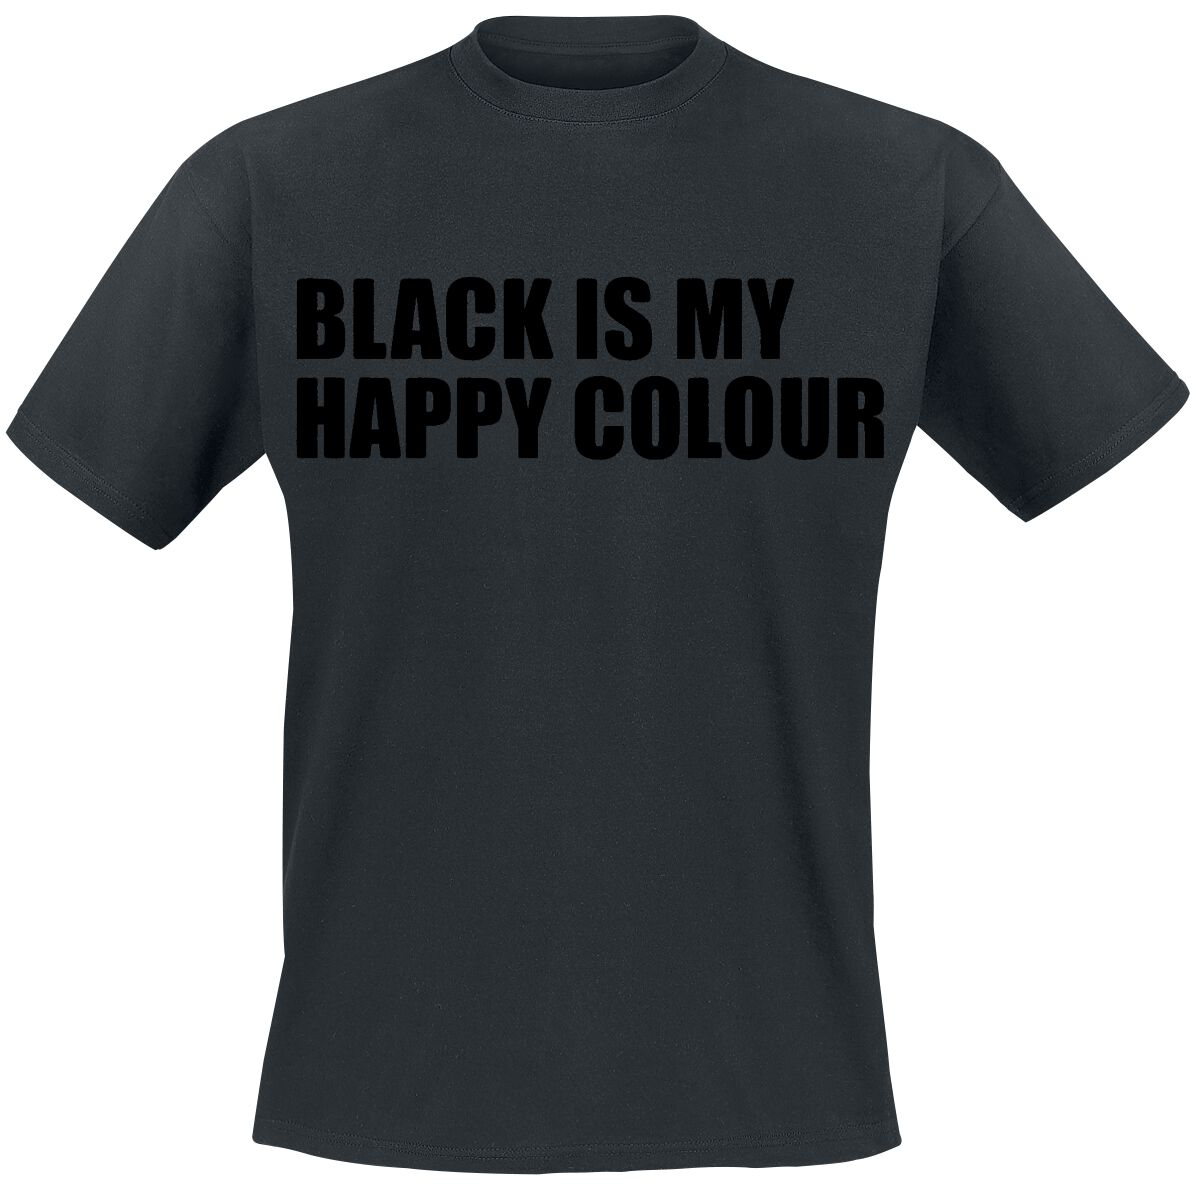 Sprüche T-Shirt - Black Is My Happy Colour - M bis 5XL - für Männer - Größe XXL - schwarz